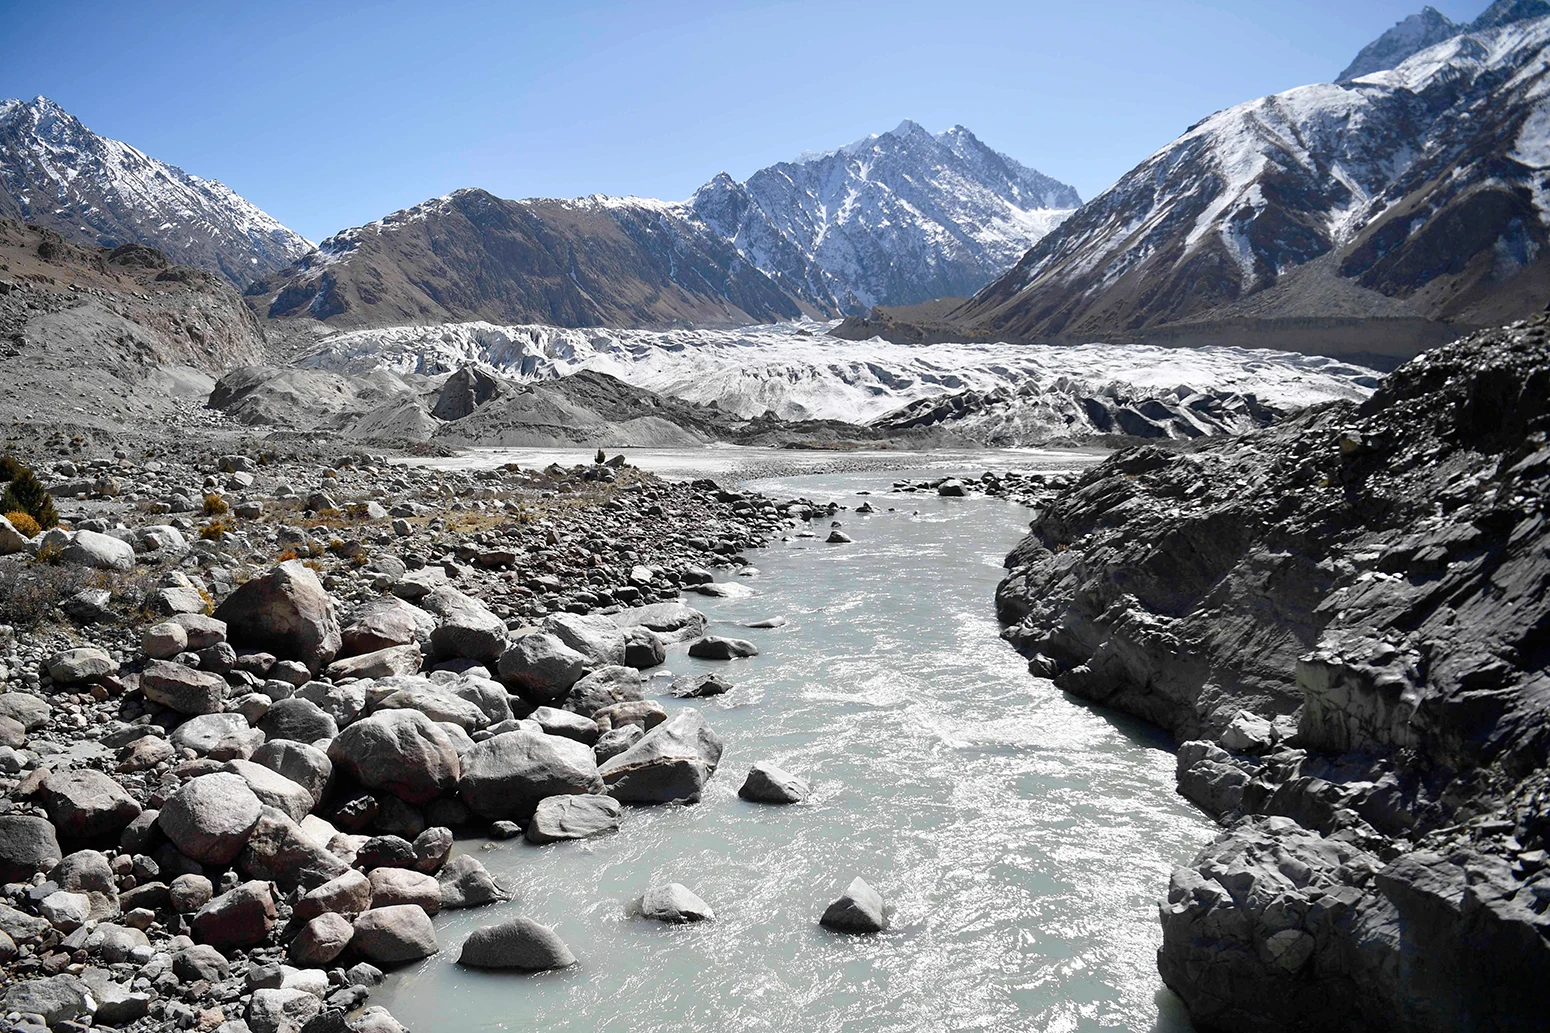 Sông băng Chiatibo ở dãy núi Hindu Kush ở huyện Chitral, tỉnh Khyber-Pakhunkwa, Pakistan.